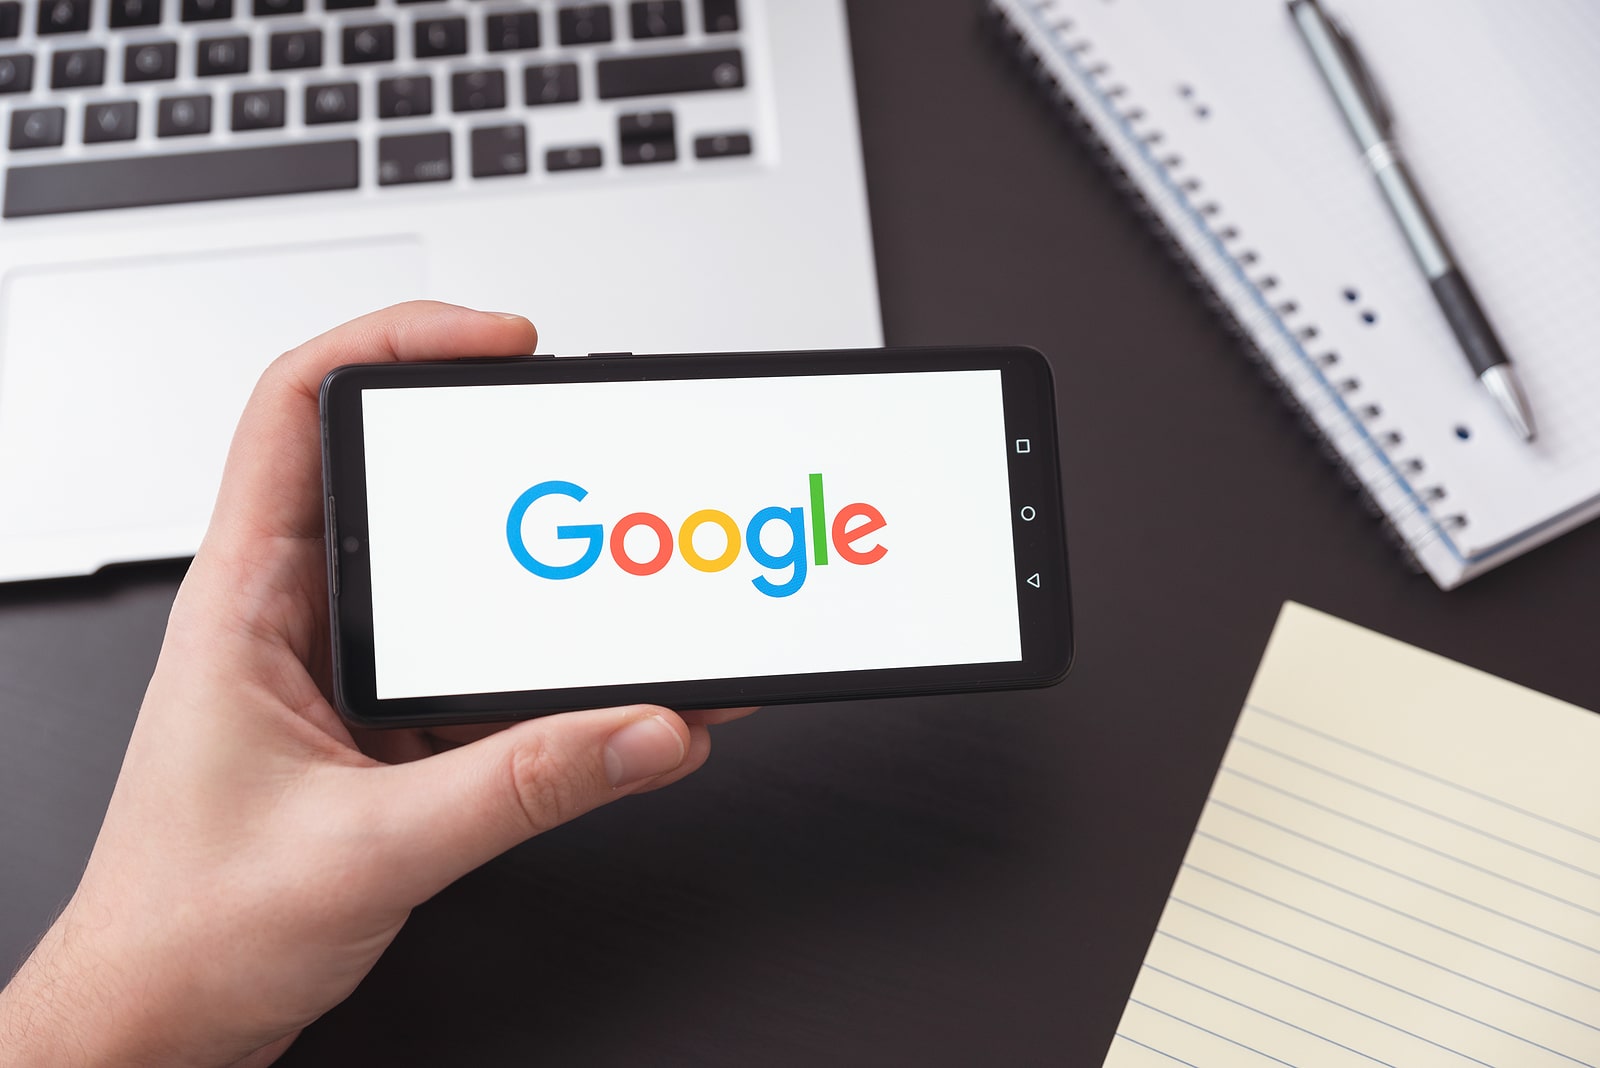 Google logo on mobile screen